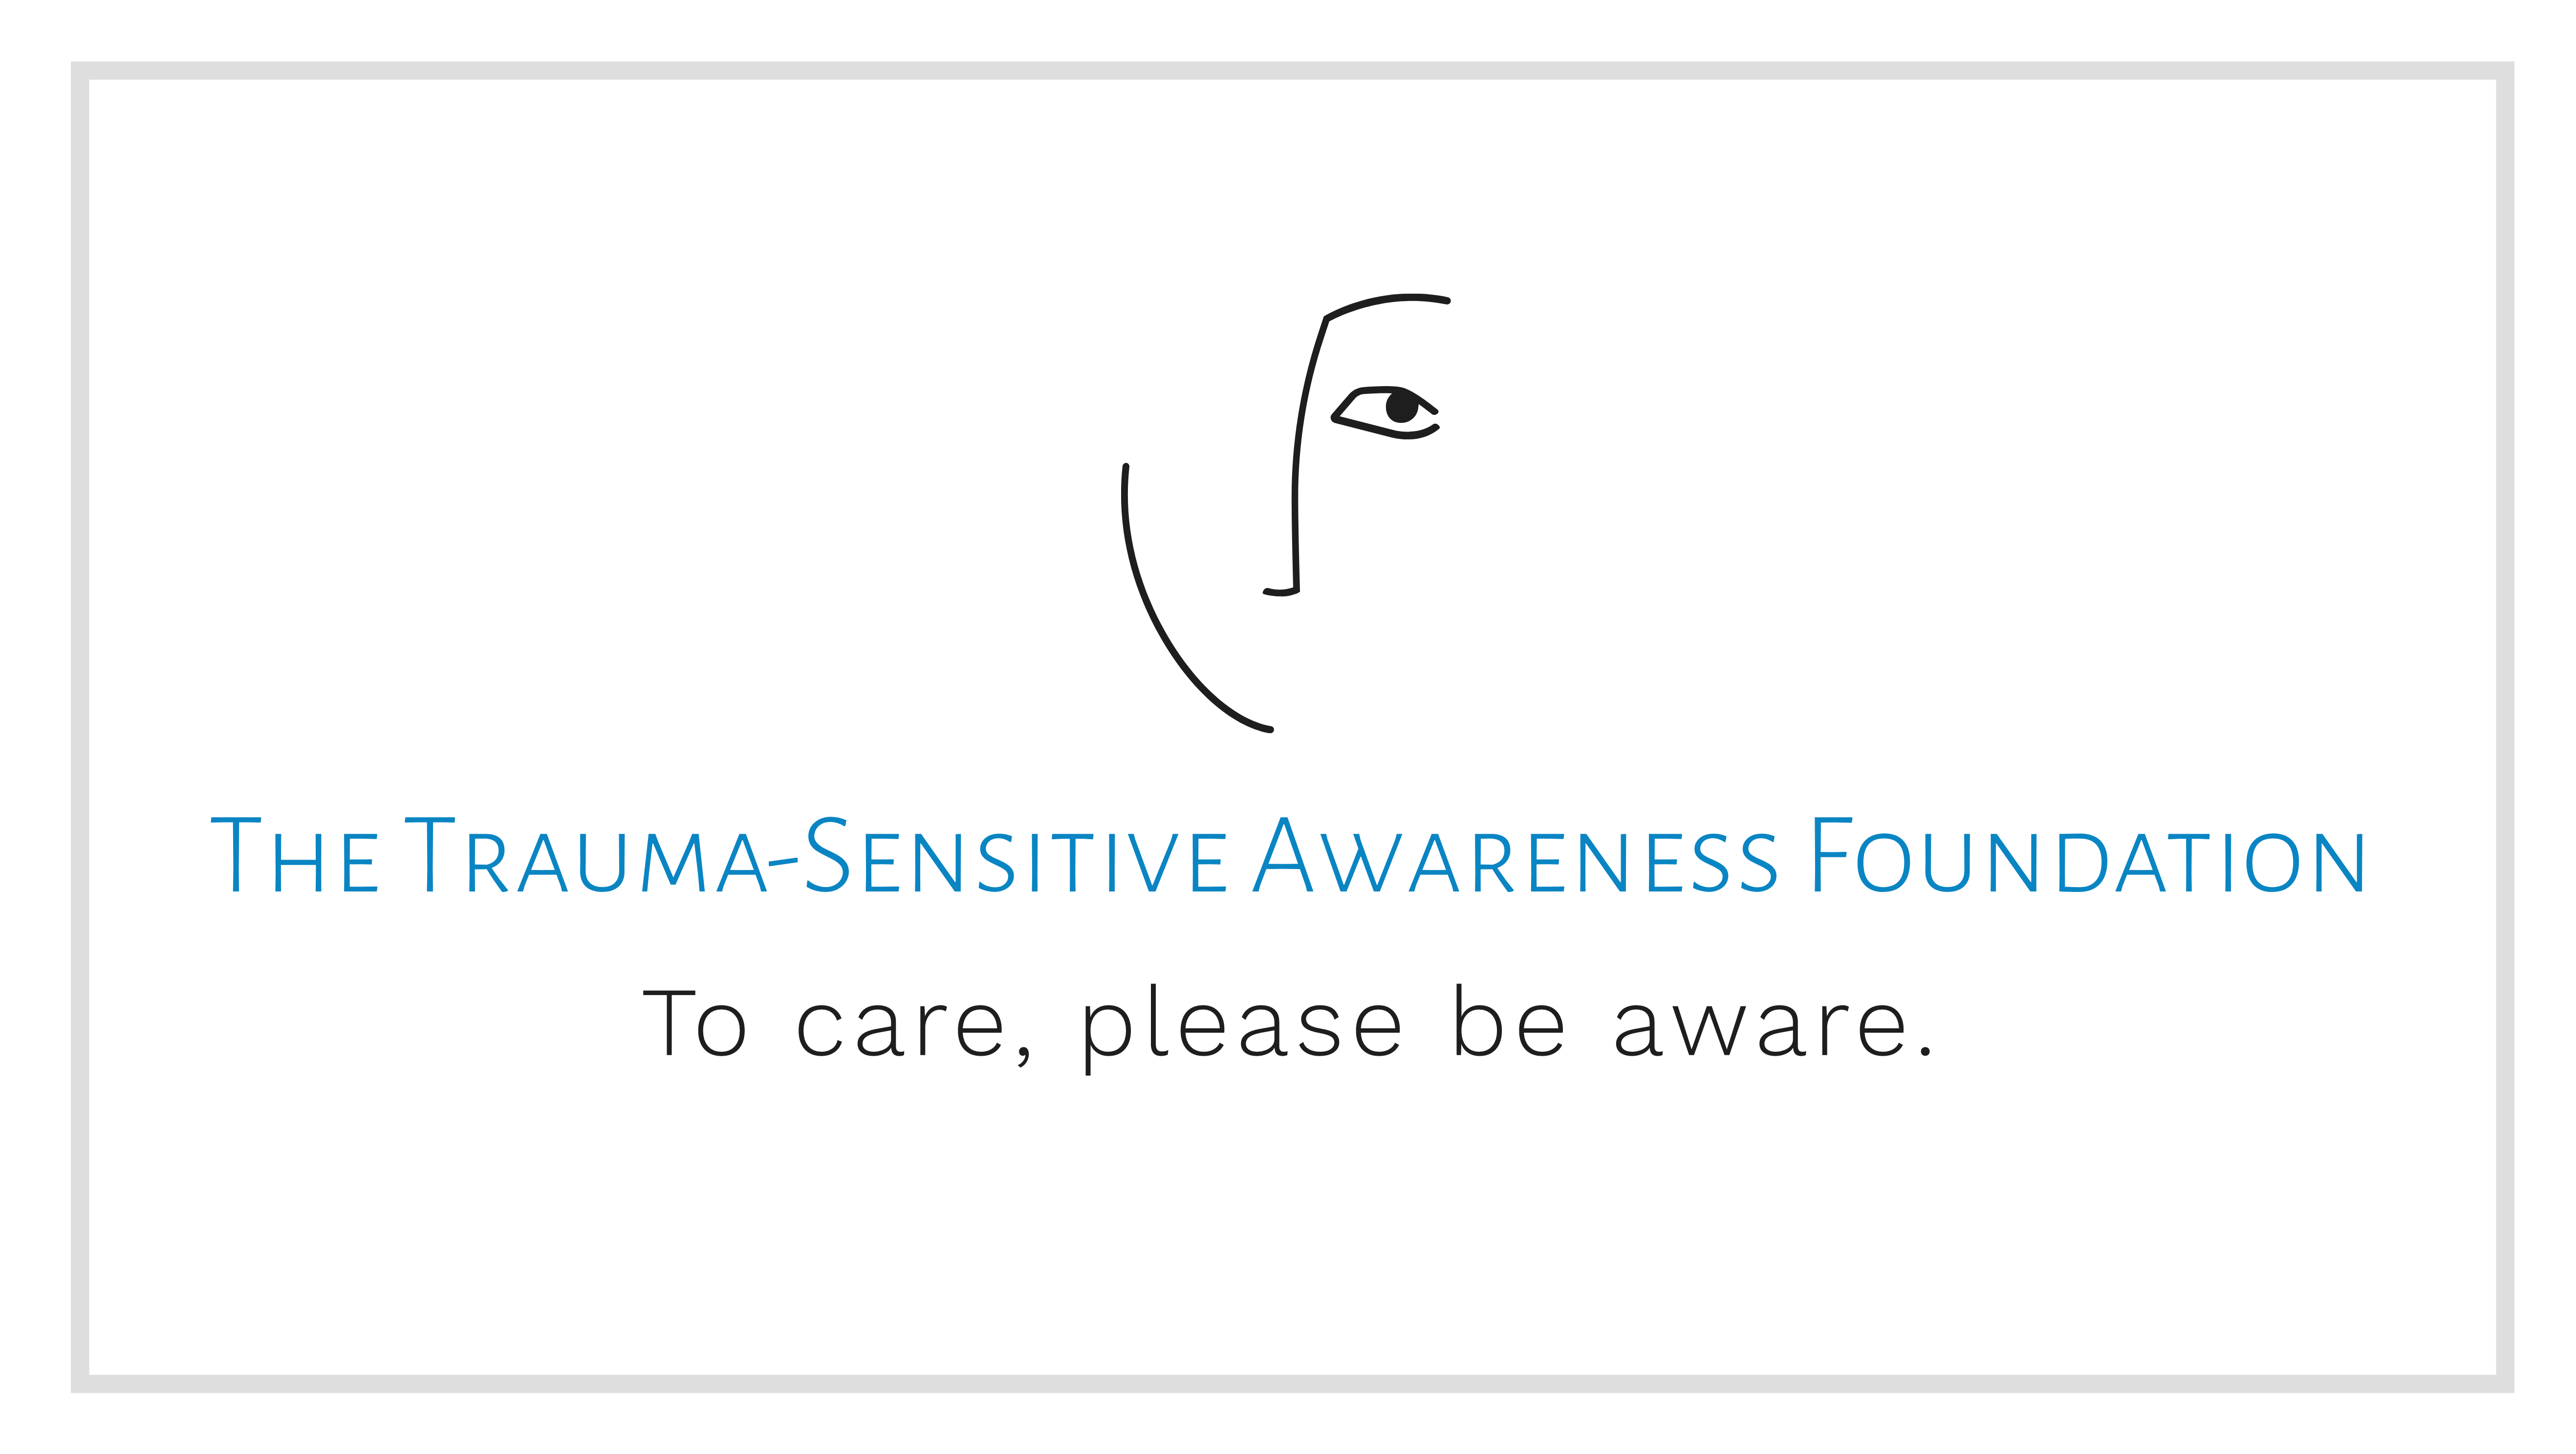 The Trauma-Sensitive Awareness Foundation, Inc. logo